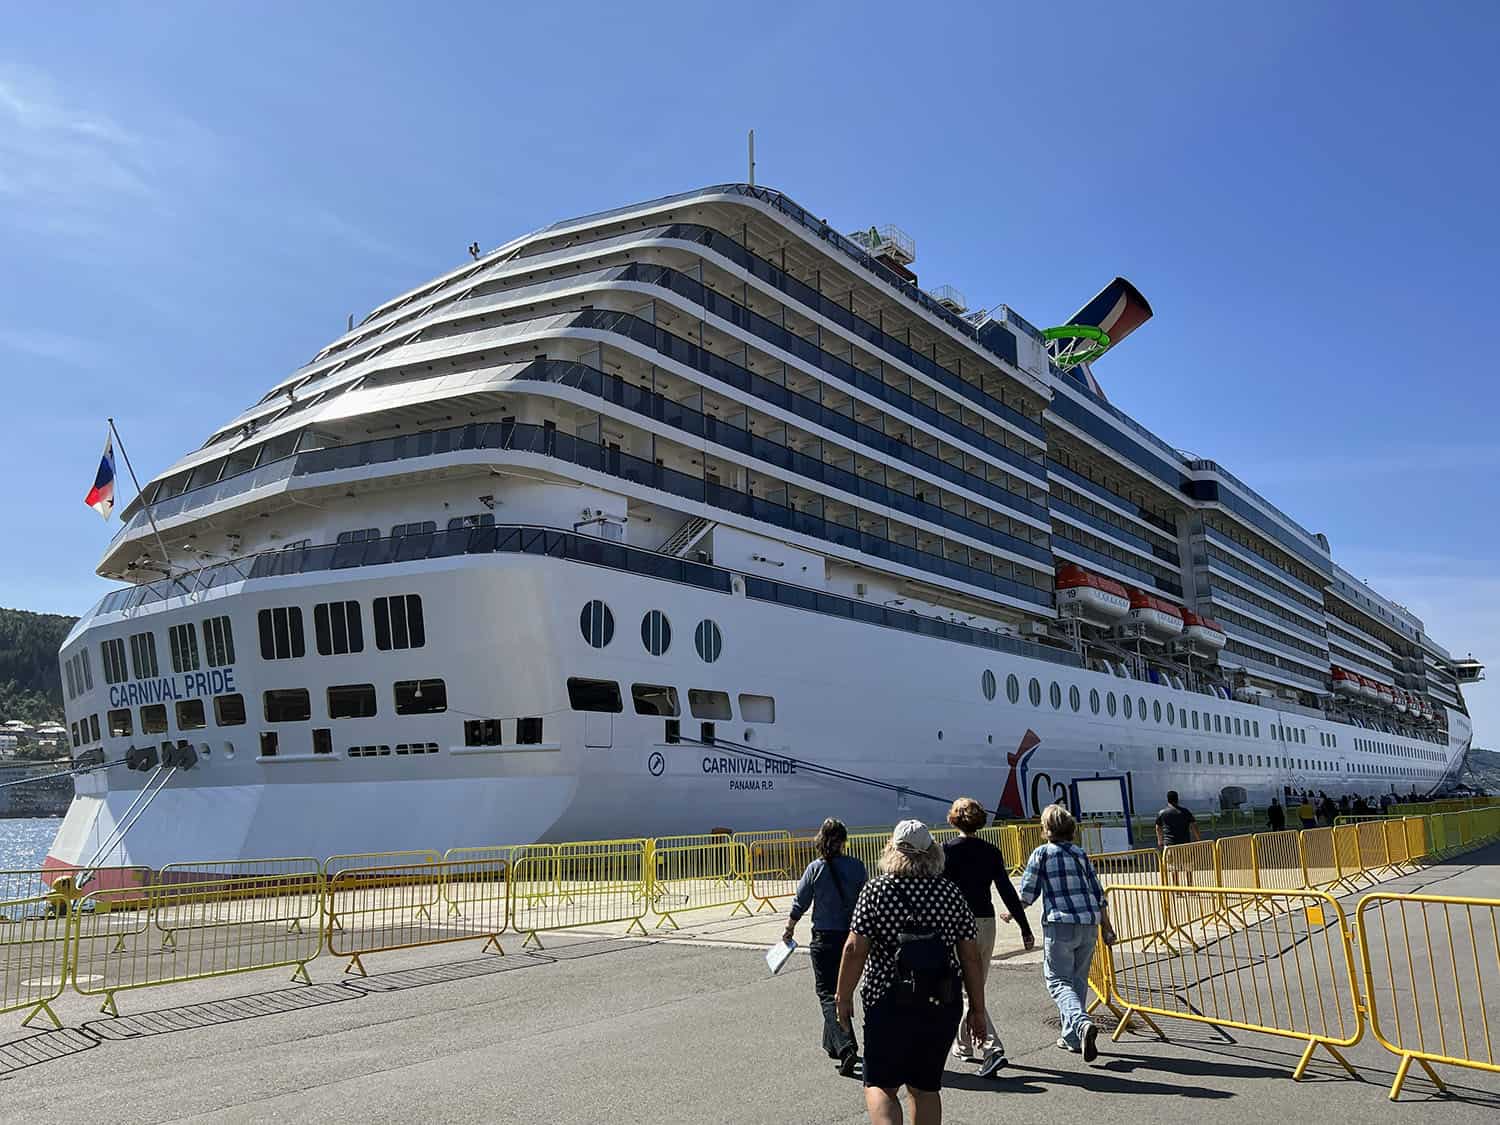 Carnival Cruise Line - Carnival Pride at Dock